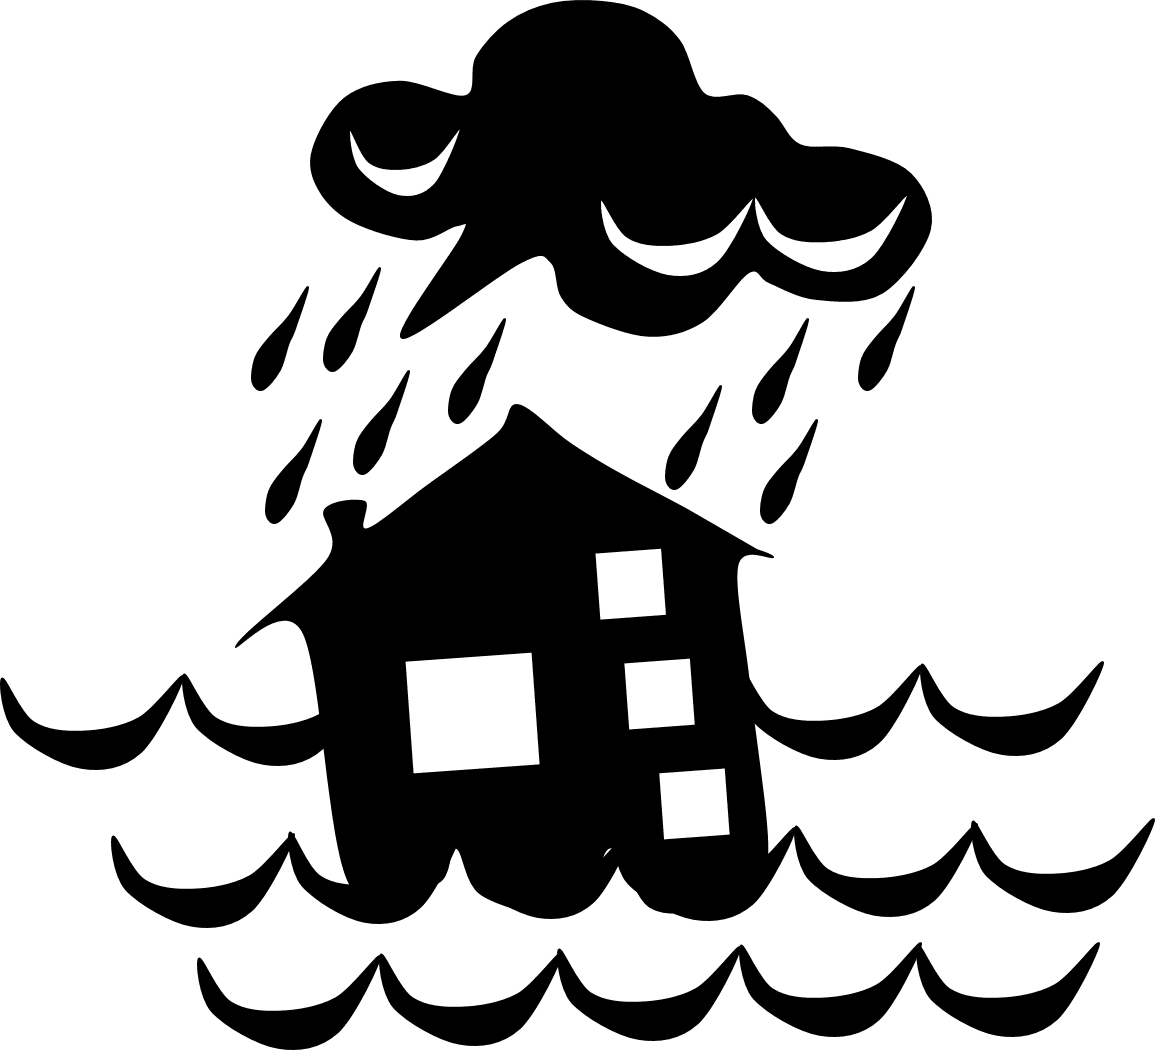 Hurricane clipart flood disaster, Hurricane flood disaster